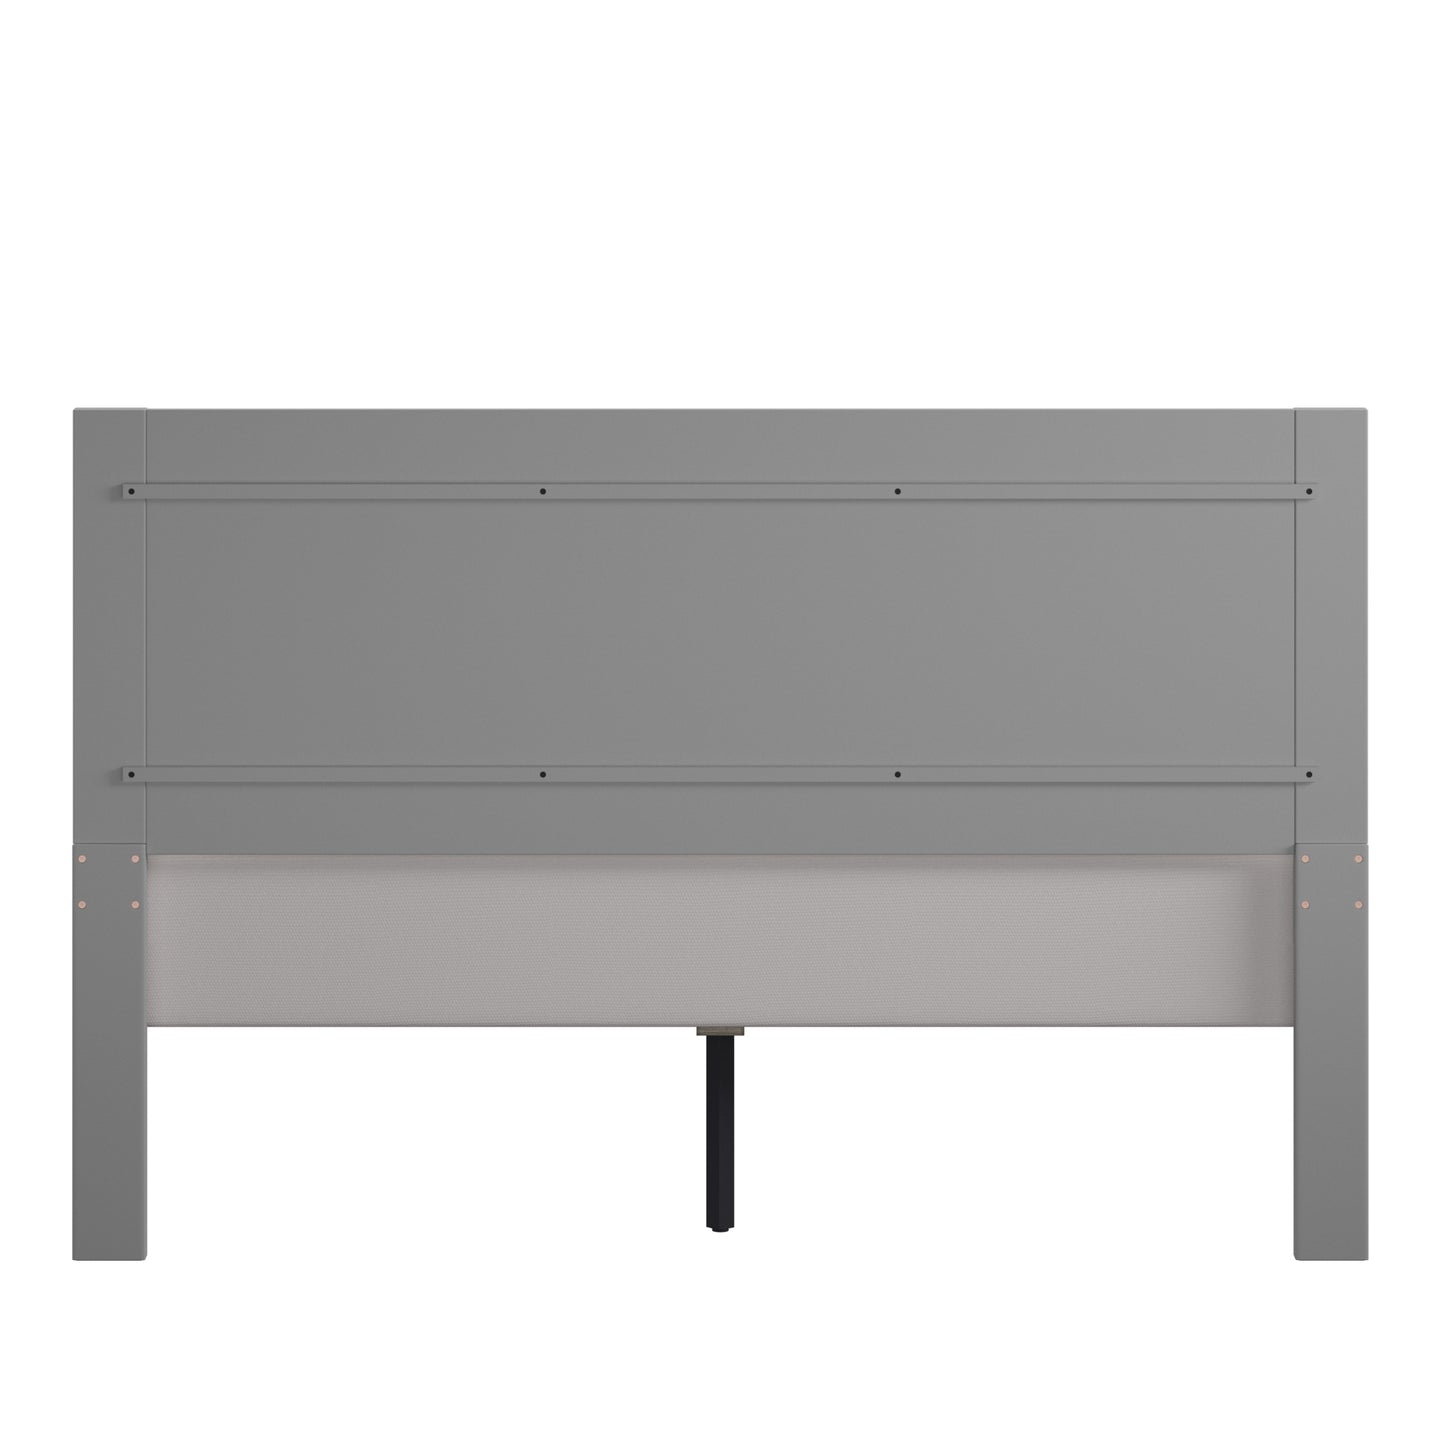 Horizontal Panel Platform Bed - Frost Grey, Queen